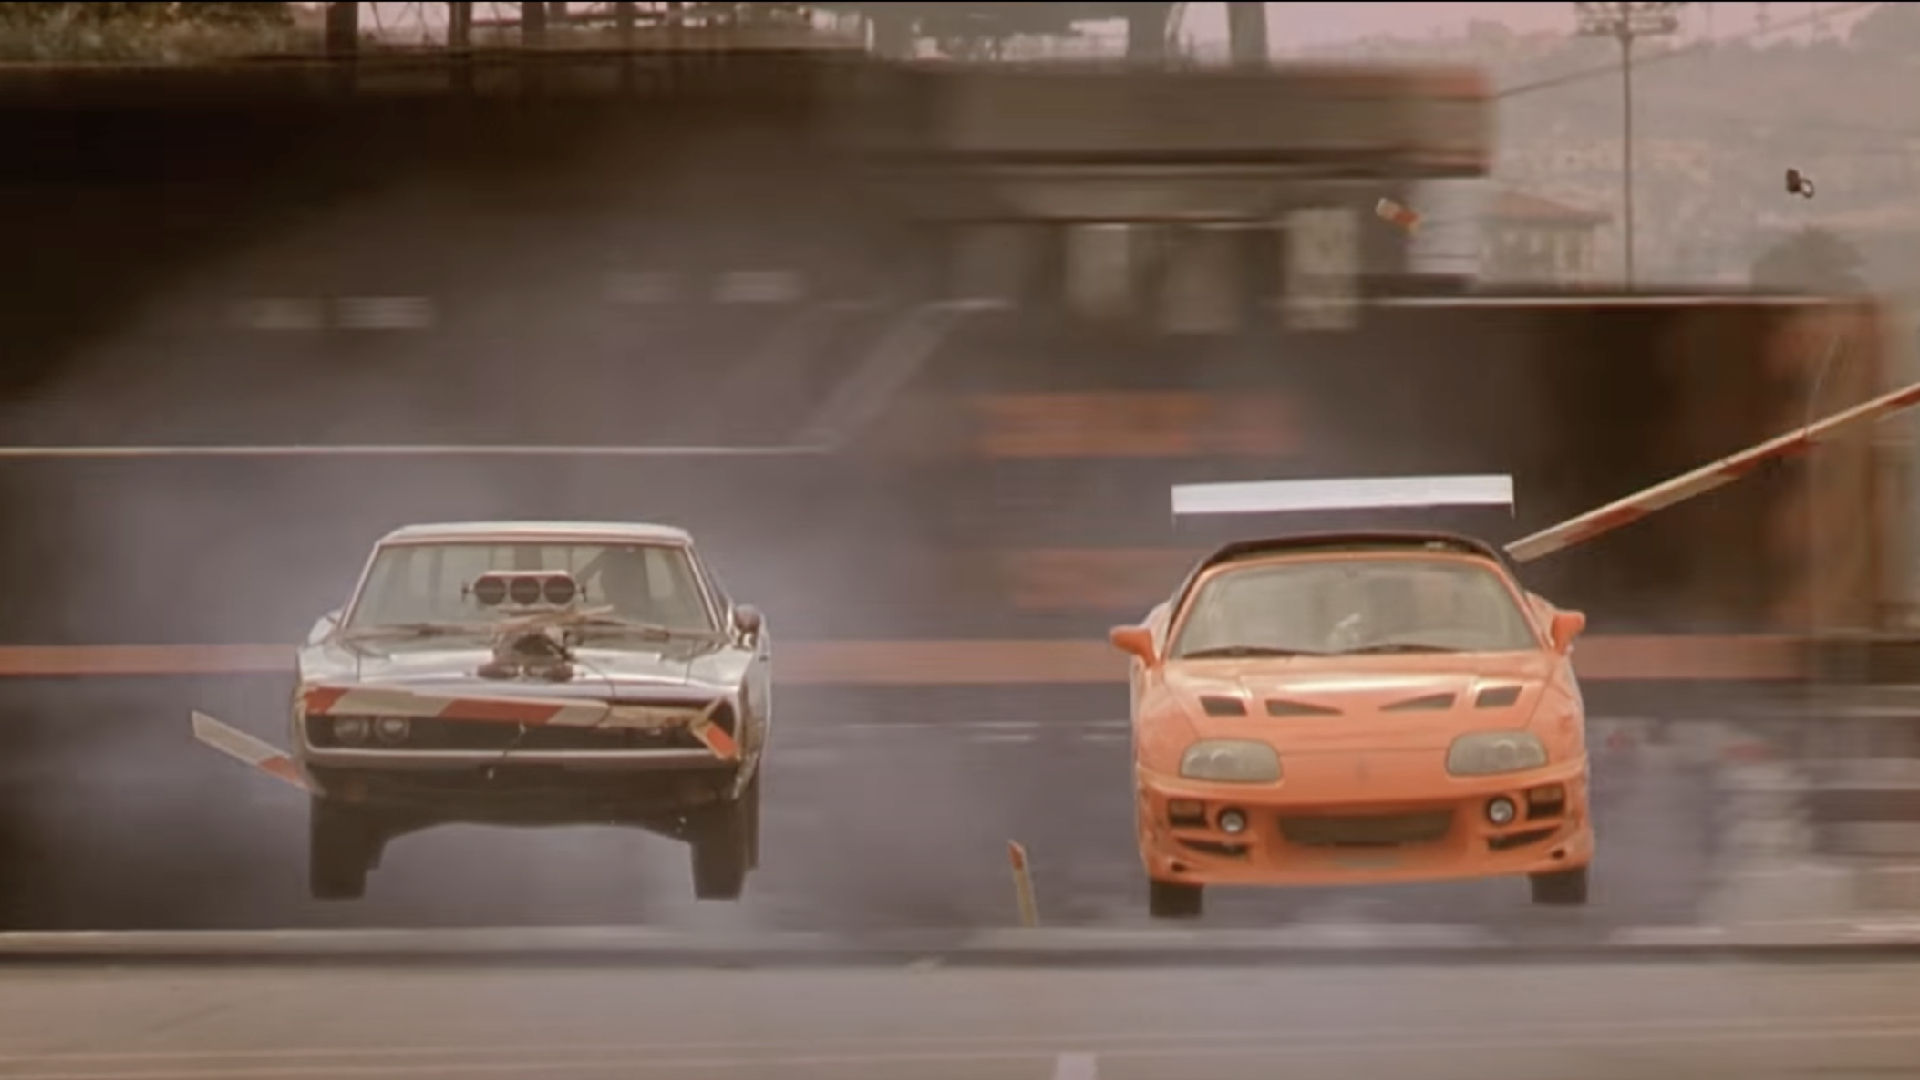 Fast & Furious 6 (2013) - IMDb